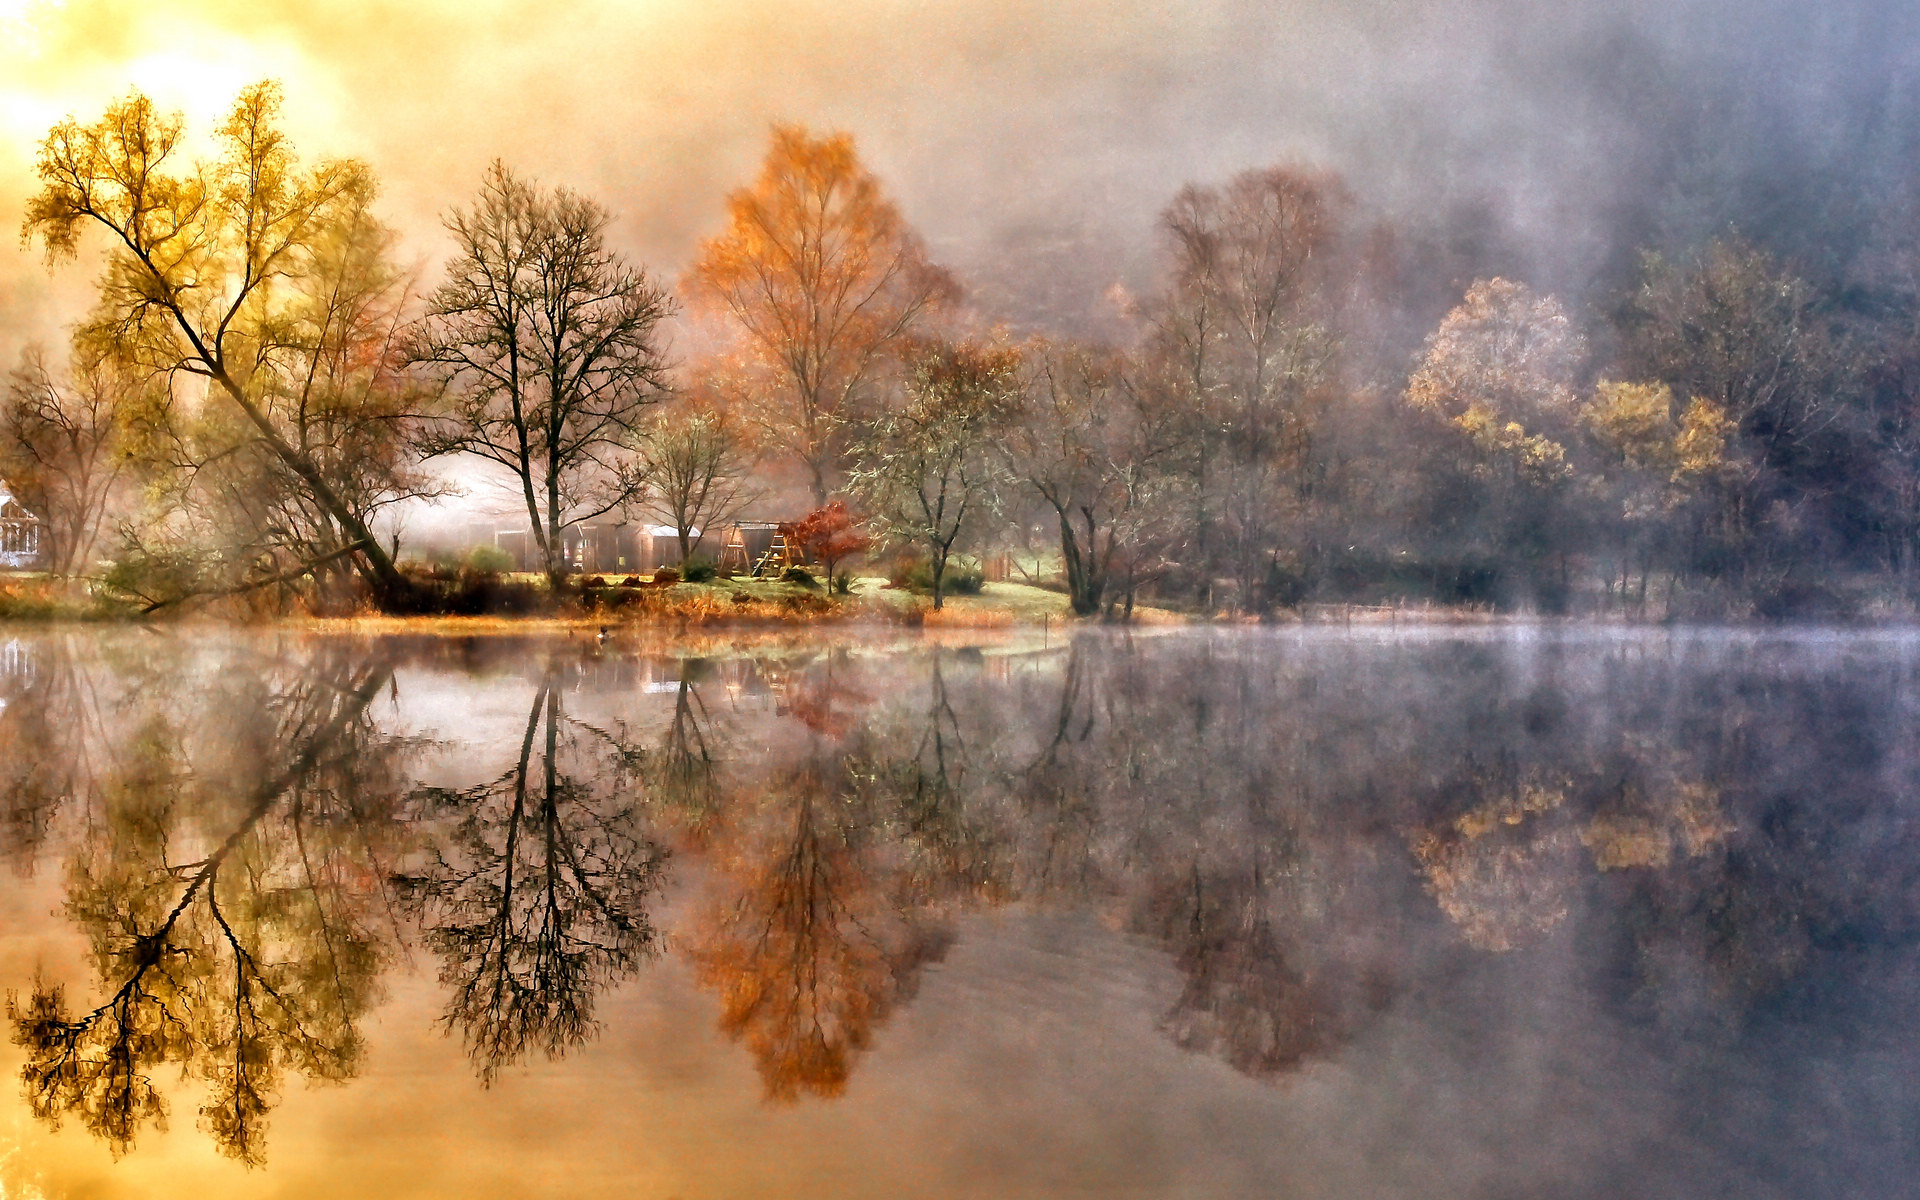 风景如画的秋天美景图片桌面壁纸